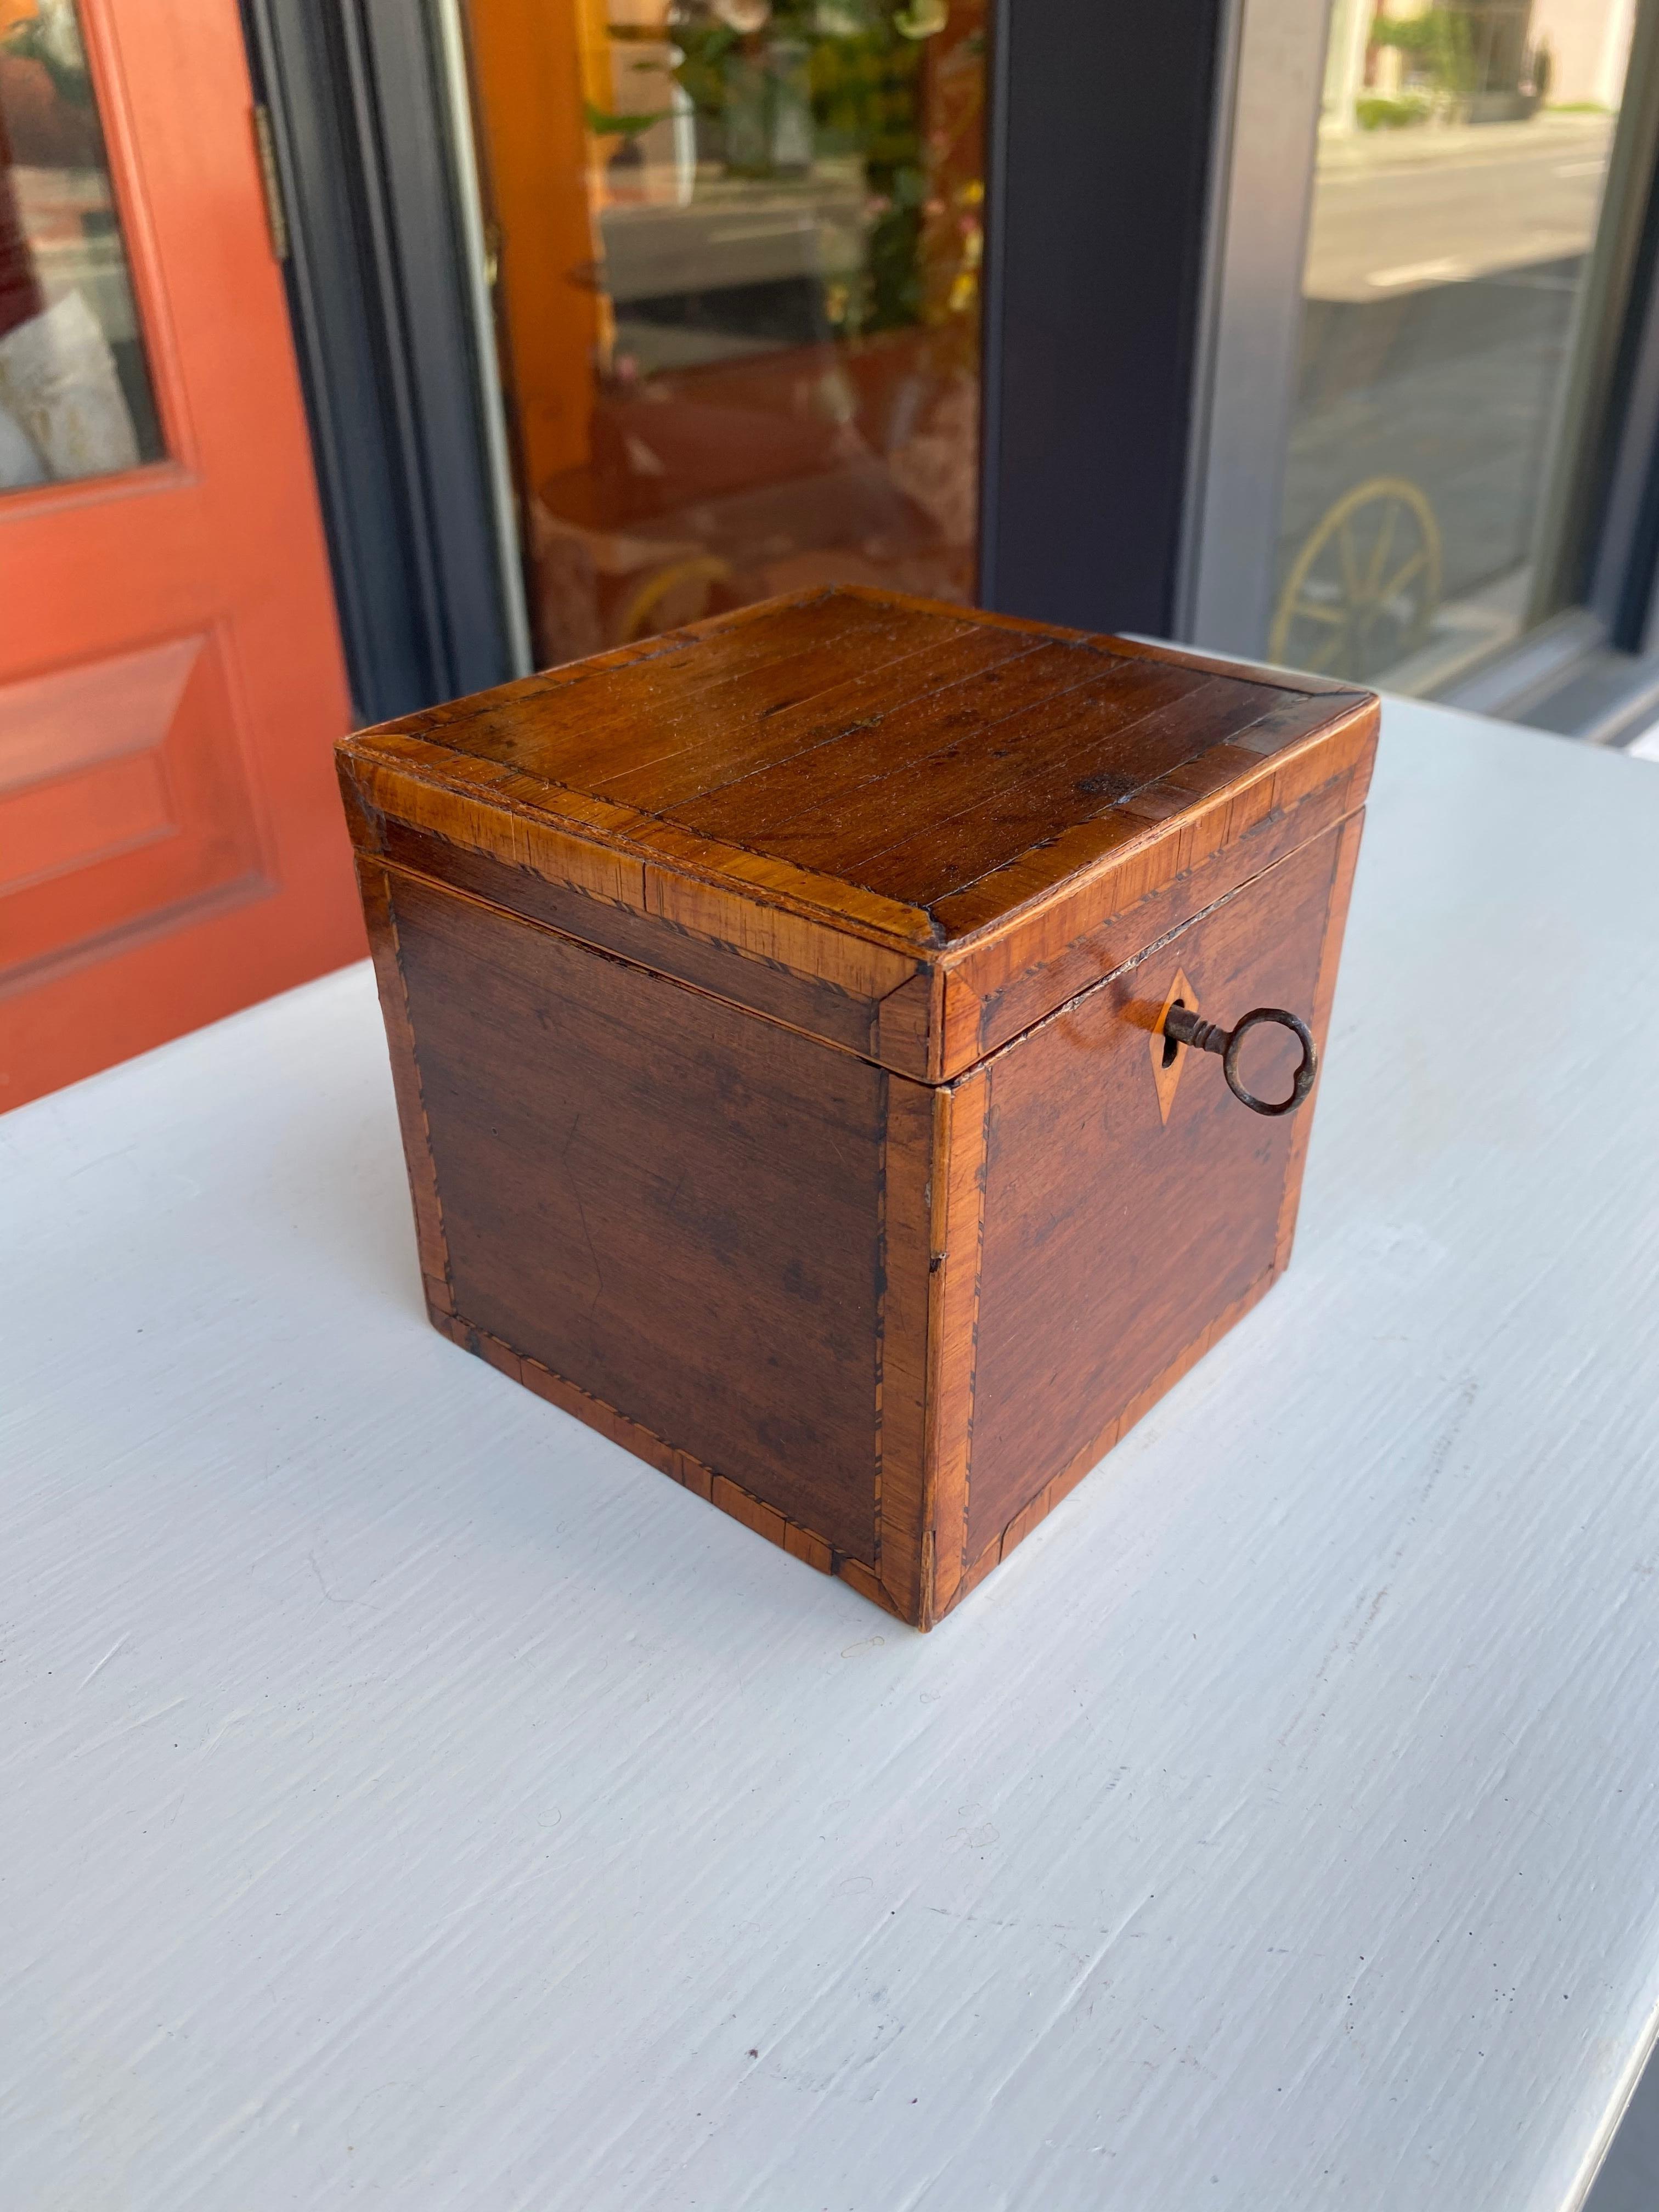 European Mahogany inlaid cube tea caddy with key early 19th century